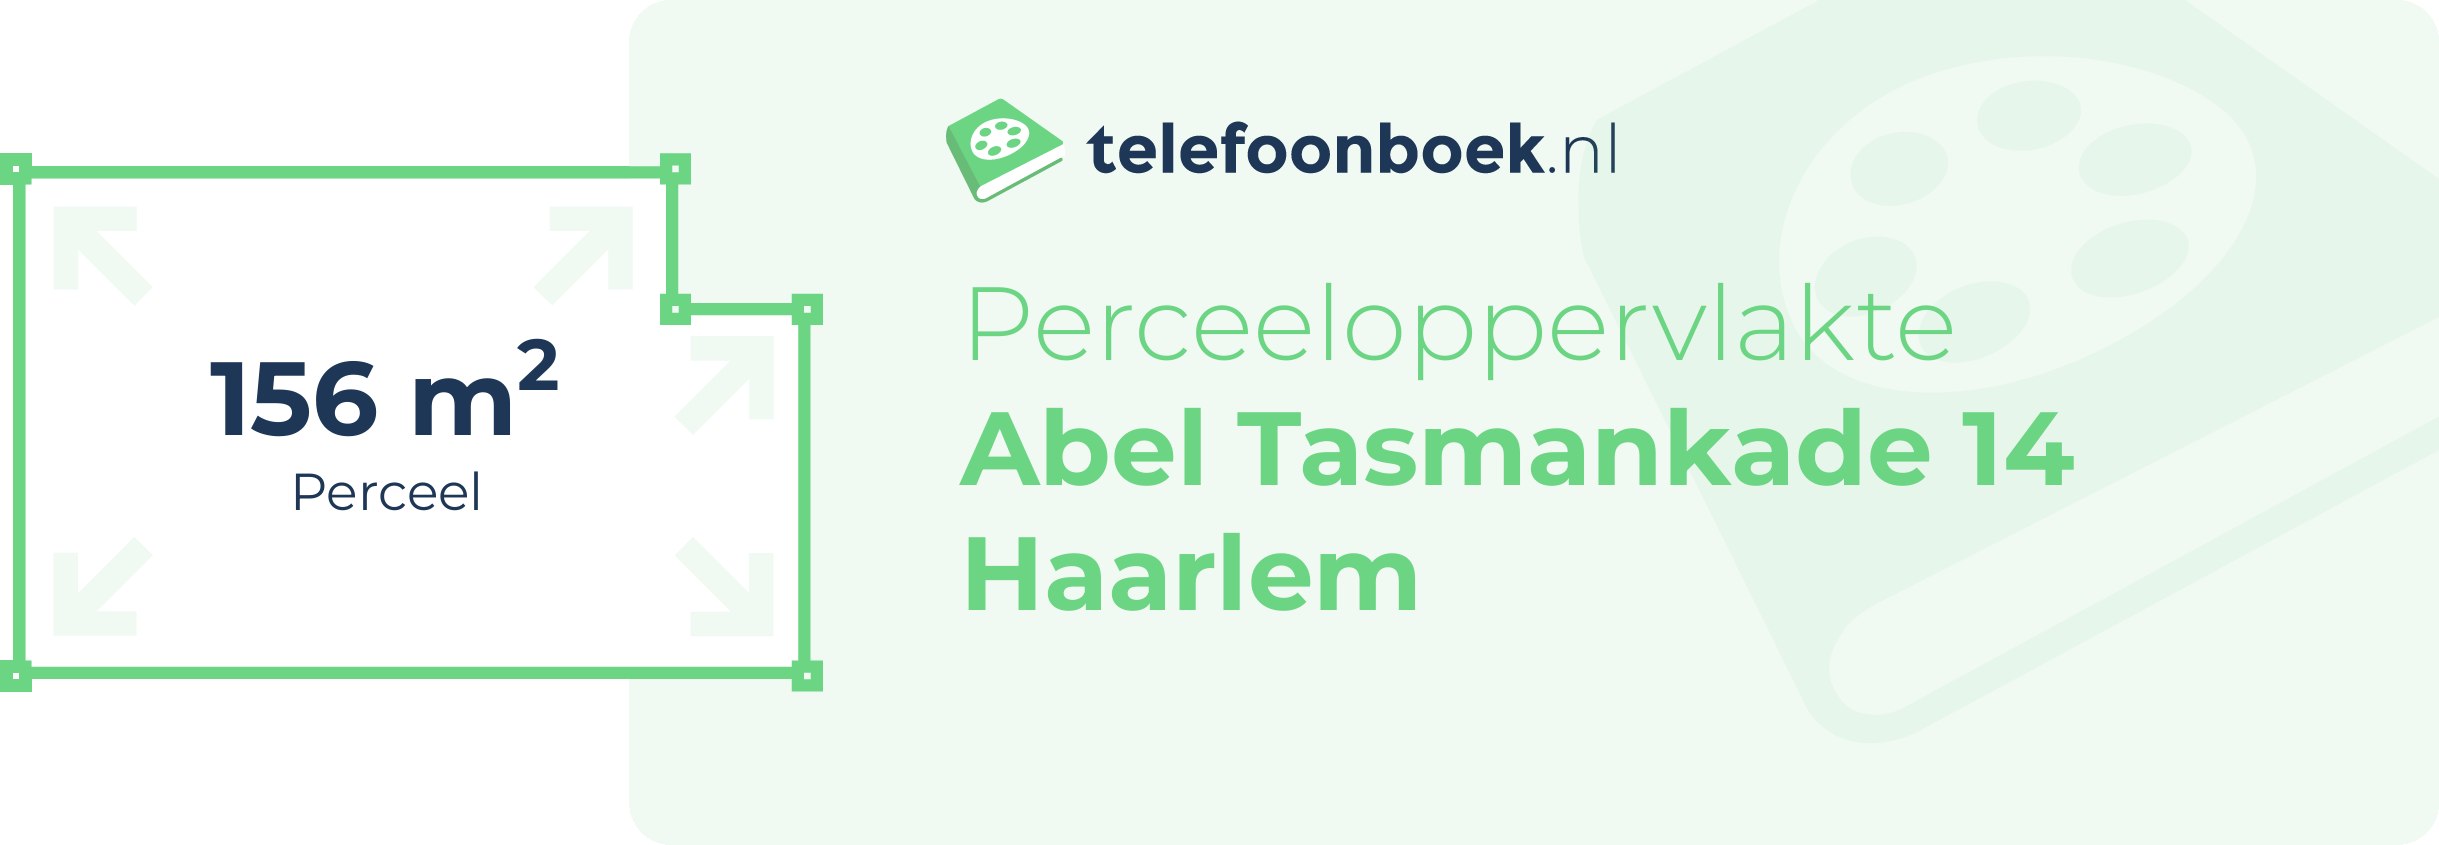 Perceeloppervlakte Abel Tasmankade 14 Haarlem